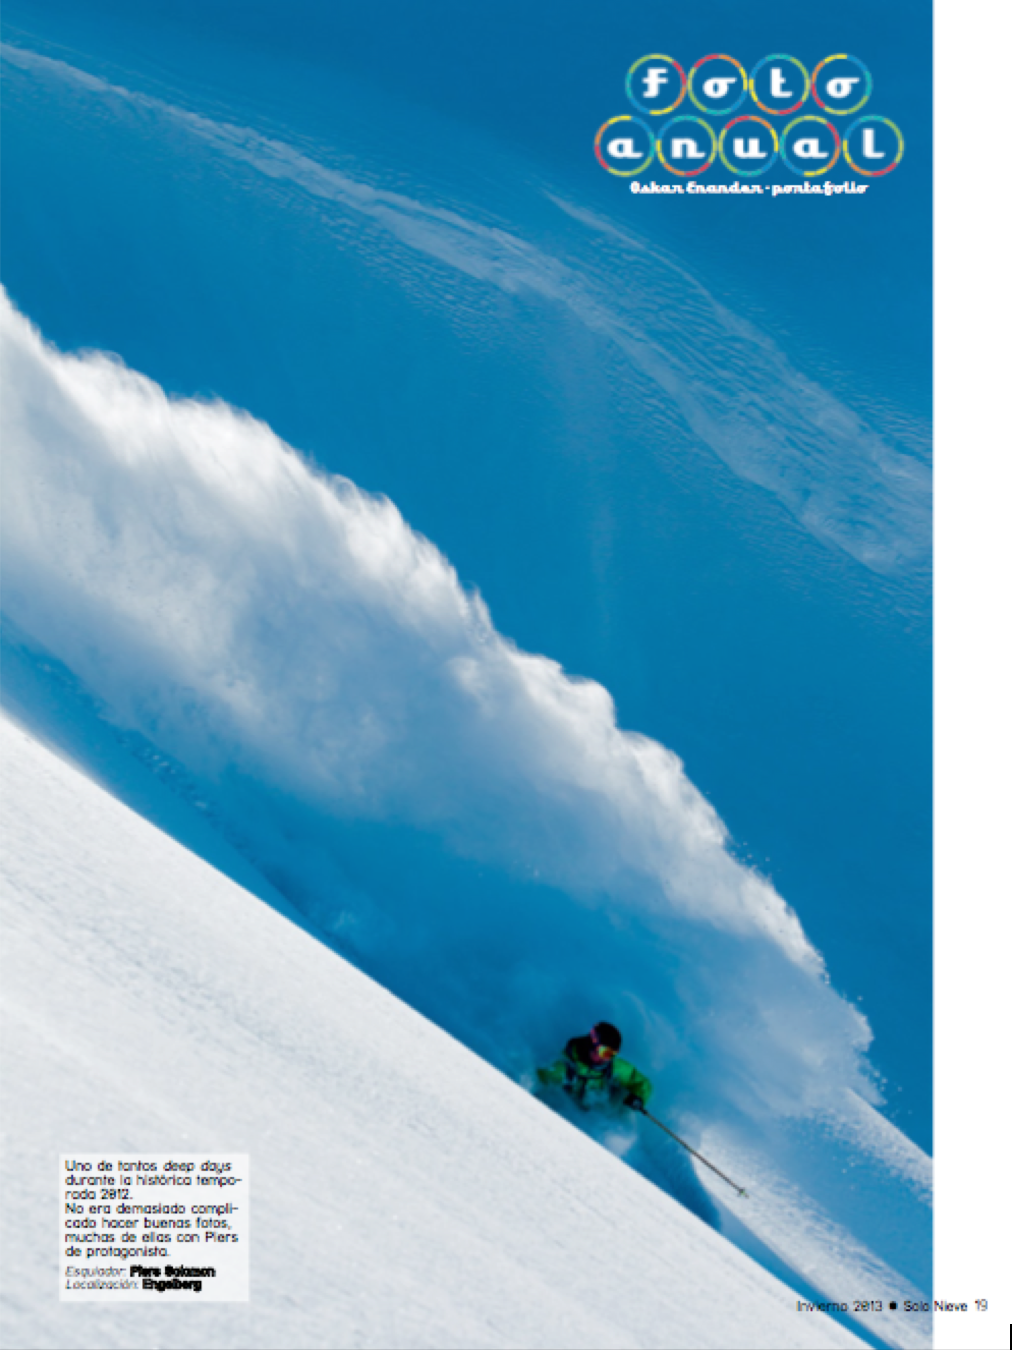  "Solo Nieve" Magazine (ESP) 